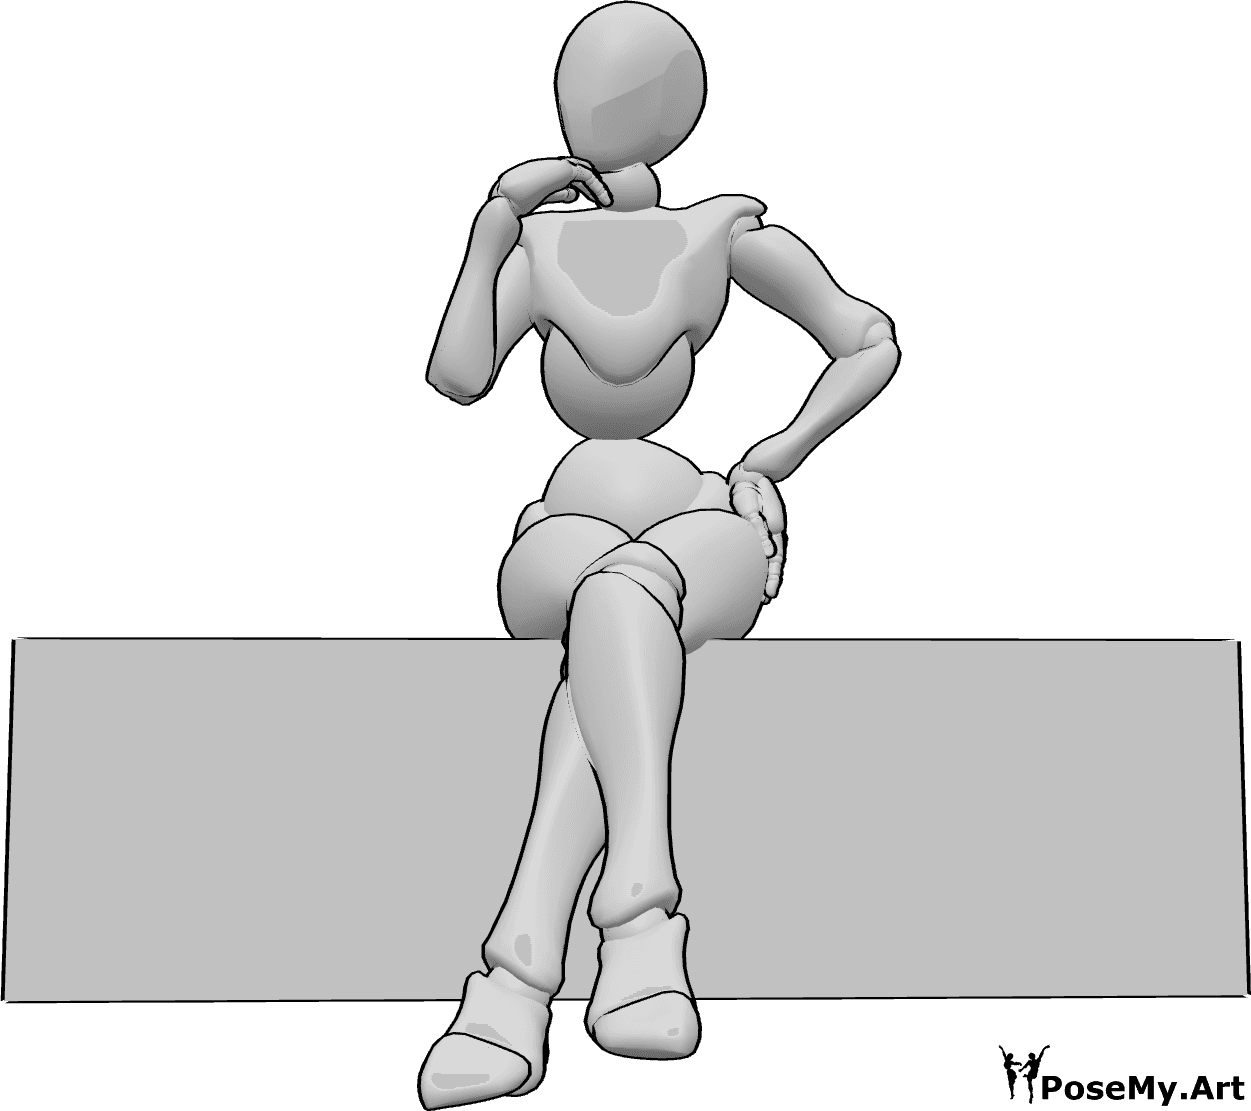 Referência de poses- Pose de mulher sentada gira - A mulher está sentada e a fazer uma pose gira, com as pernas cruzadas e a mão esquerda na anca